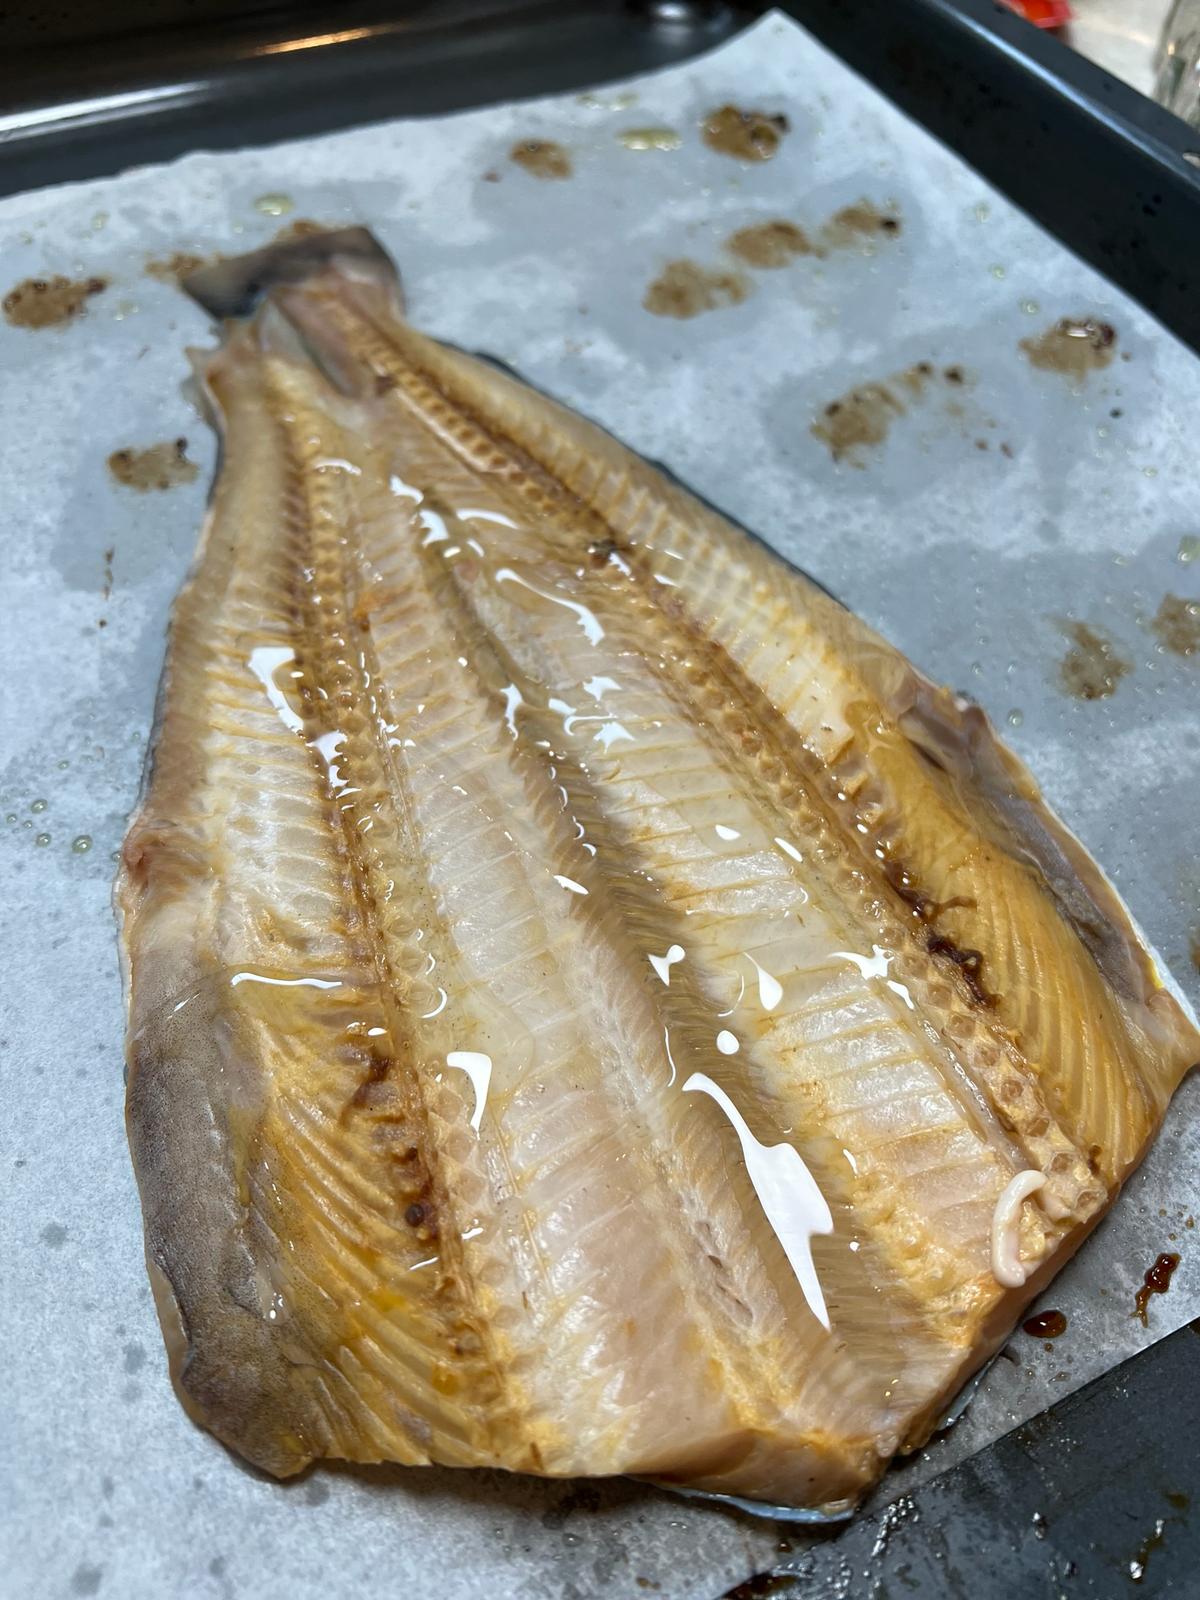 Shima Hokke Hiraki Fish (Atka Mackerel) 350-400g